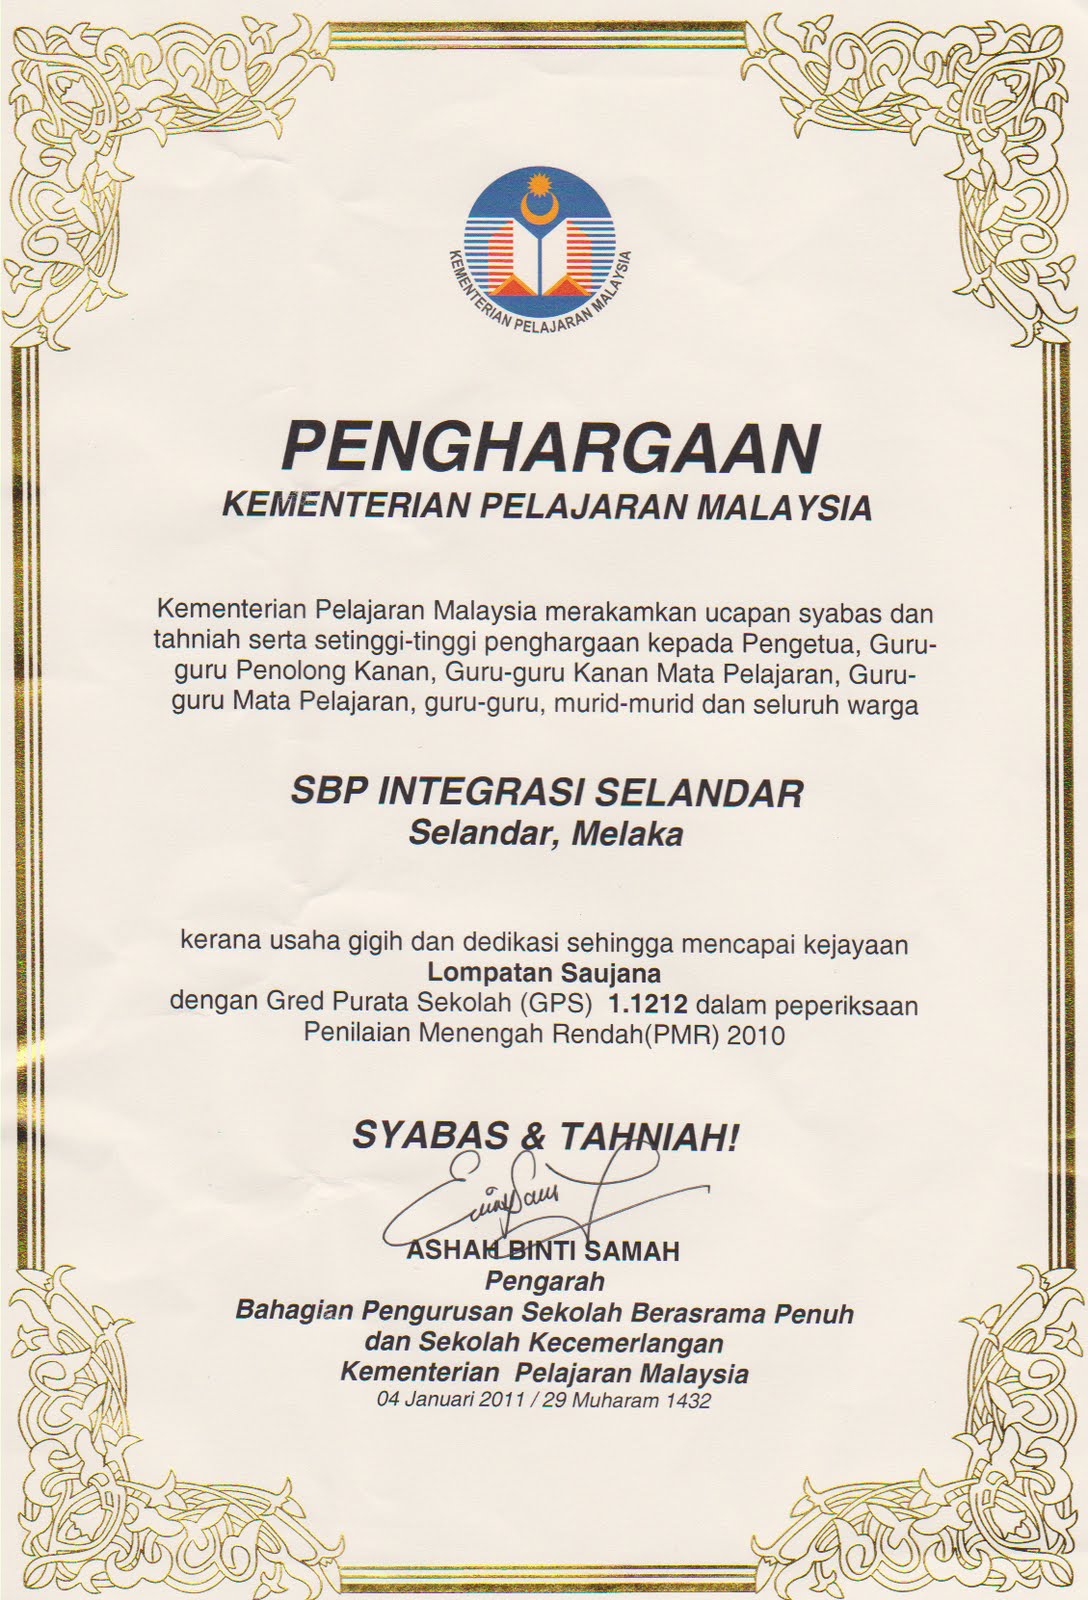 Portal Rasmi SBP Integrasi Selandar: SIJIL PENGHARGAAN 